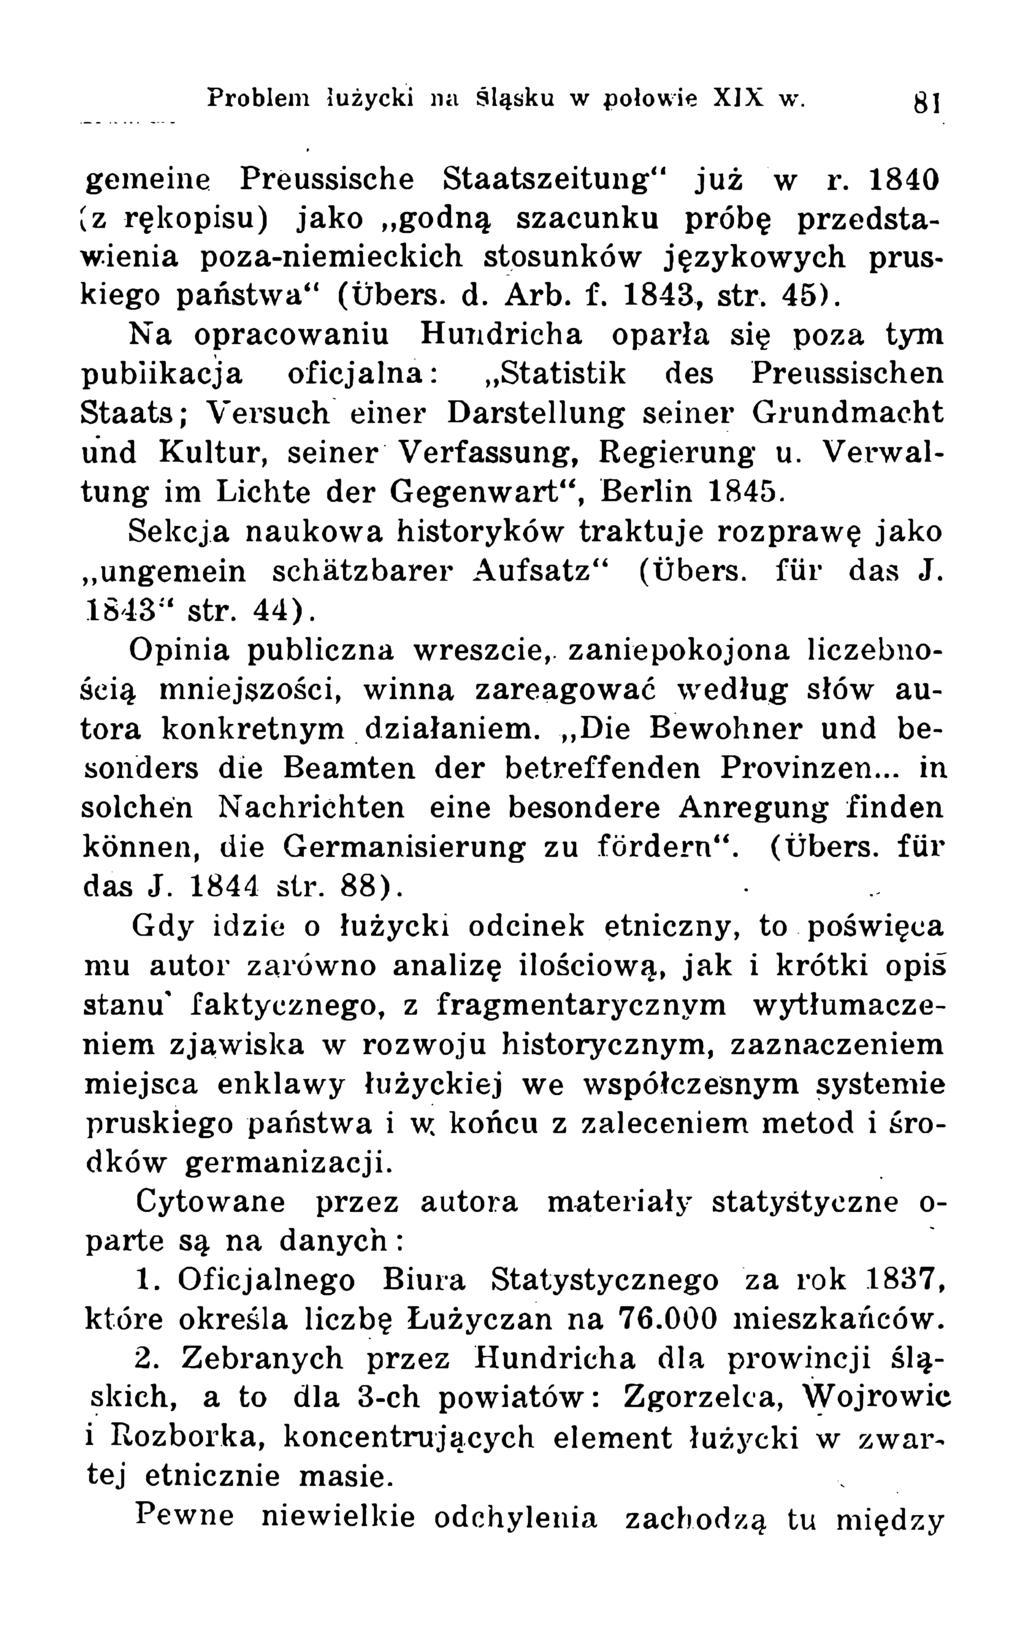 gemeine Preussische Staatszeitung już w r. 1840 (z rękopisu) jako,,godną szacunku próbę przedstawienia poza-niemieckich stosunków językowych pruskiego państwa4* (ubers. d. Arb. f. 1843, str. 45).